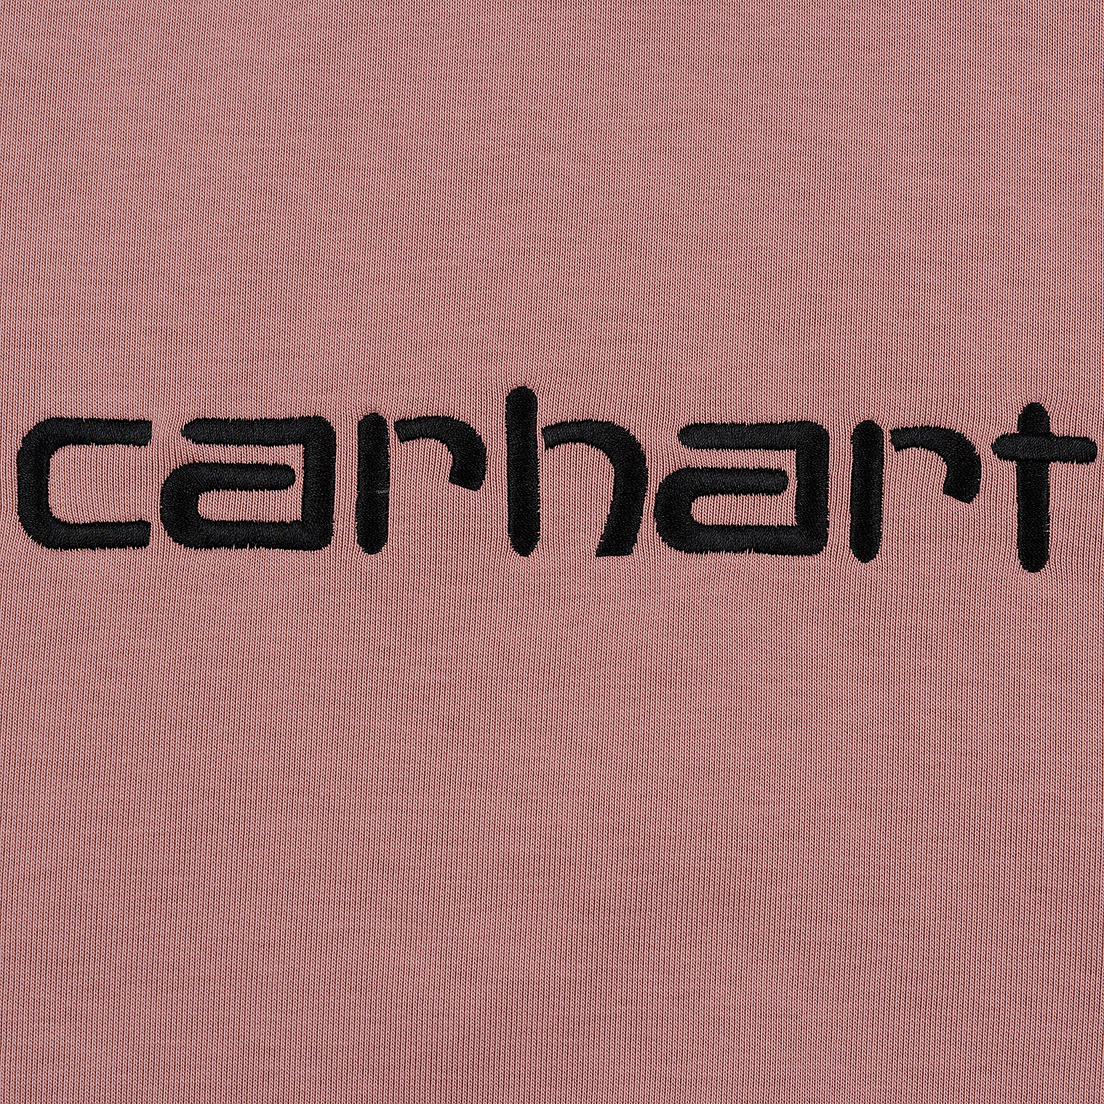 Carhartt WIP Мужская толстовка Hooded Carhartt 13 Oz